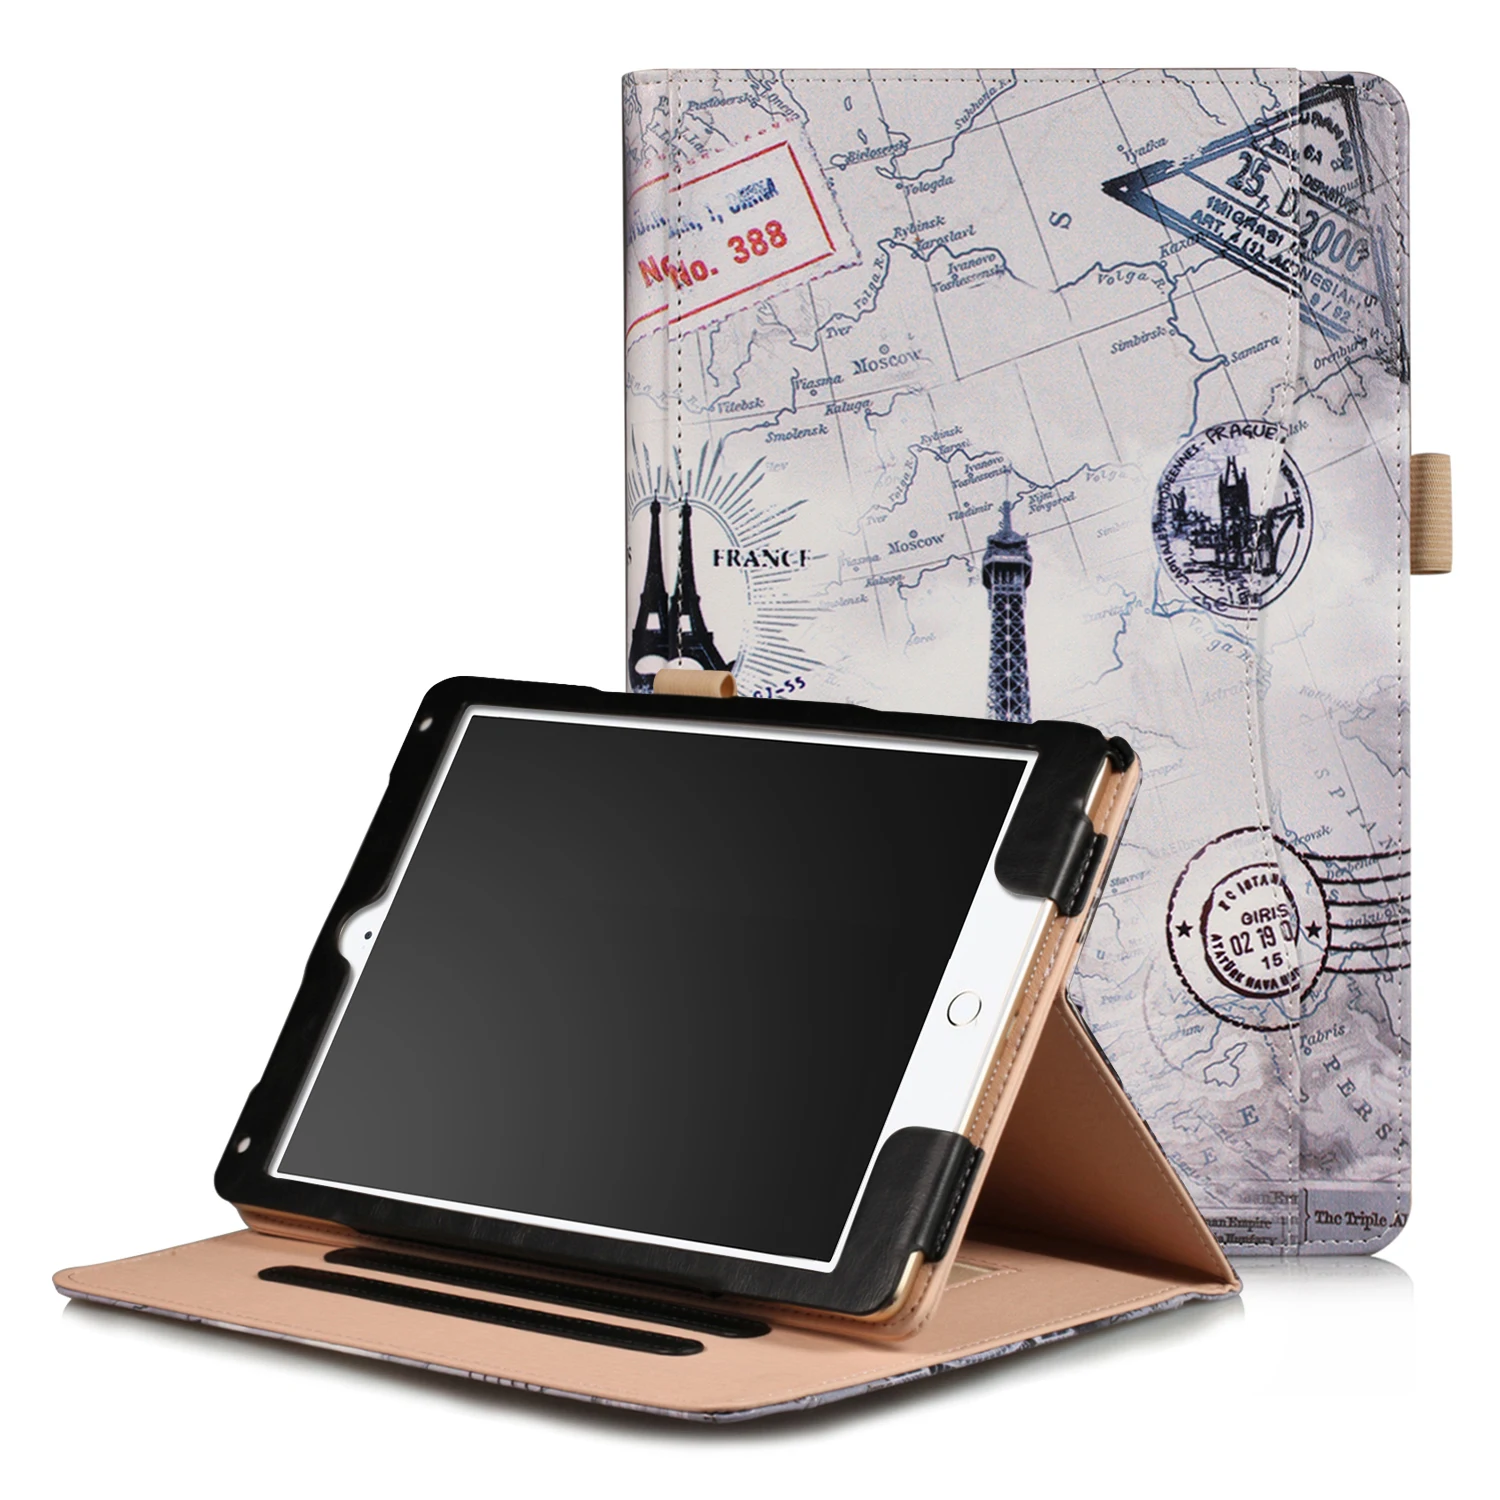 Чехол для Apple ipad 9,7 дюйма Противоударная защитная оболочка чехол для ipad air 1/2 Tablet чехол из искусственной кожи - Цвет: Tower